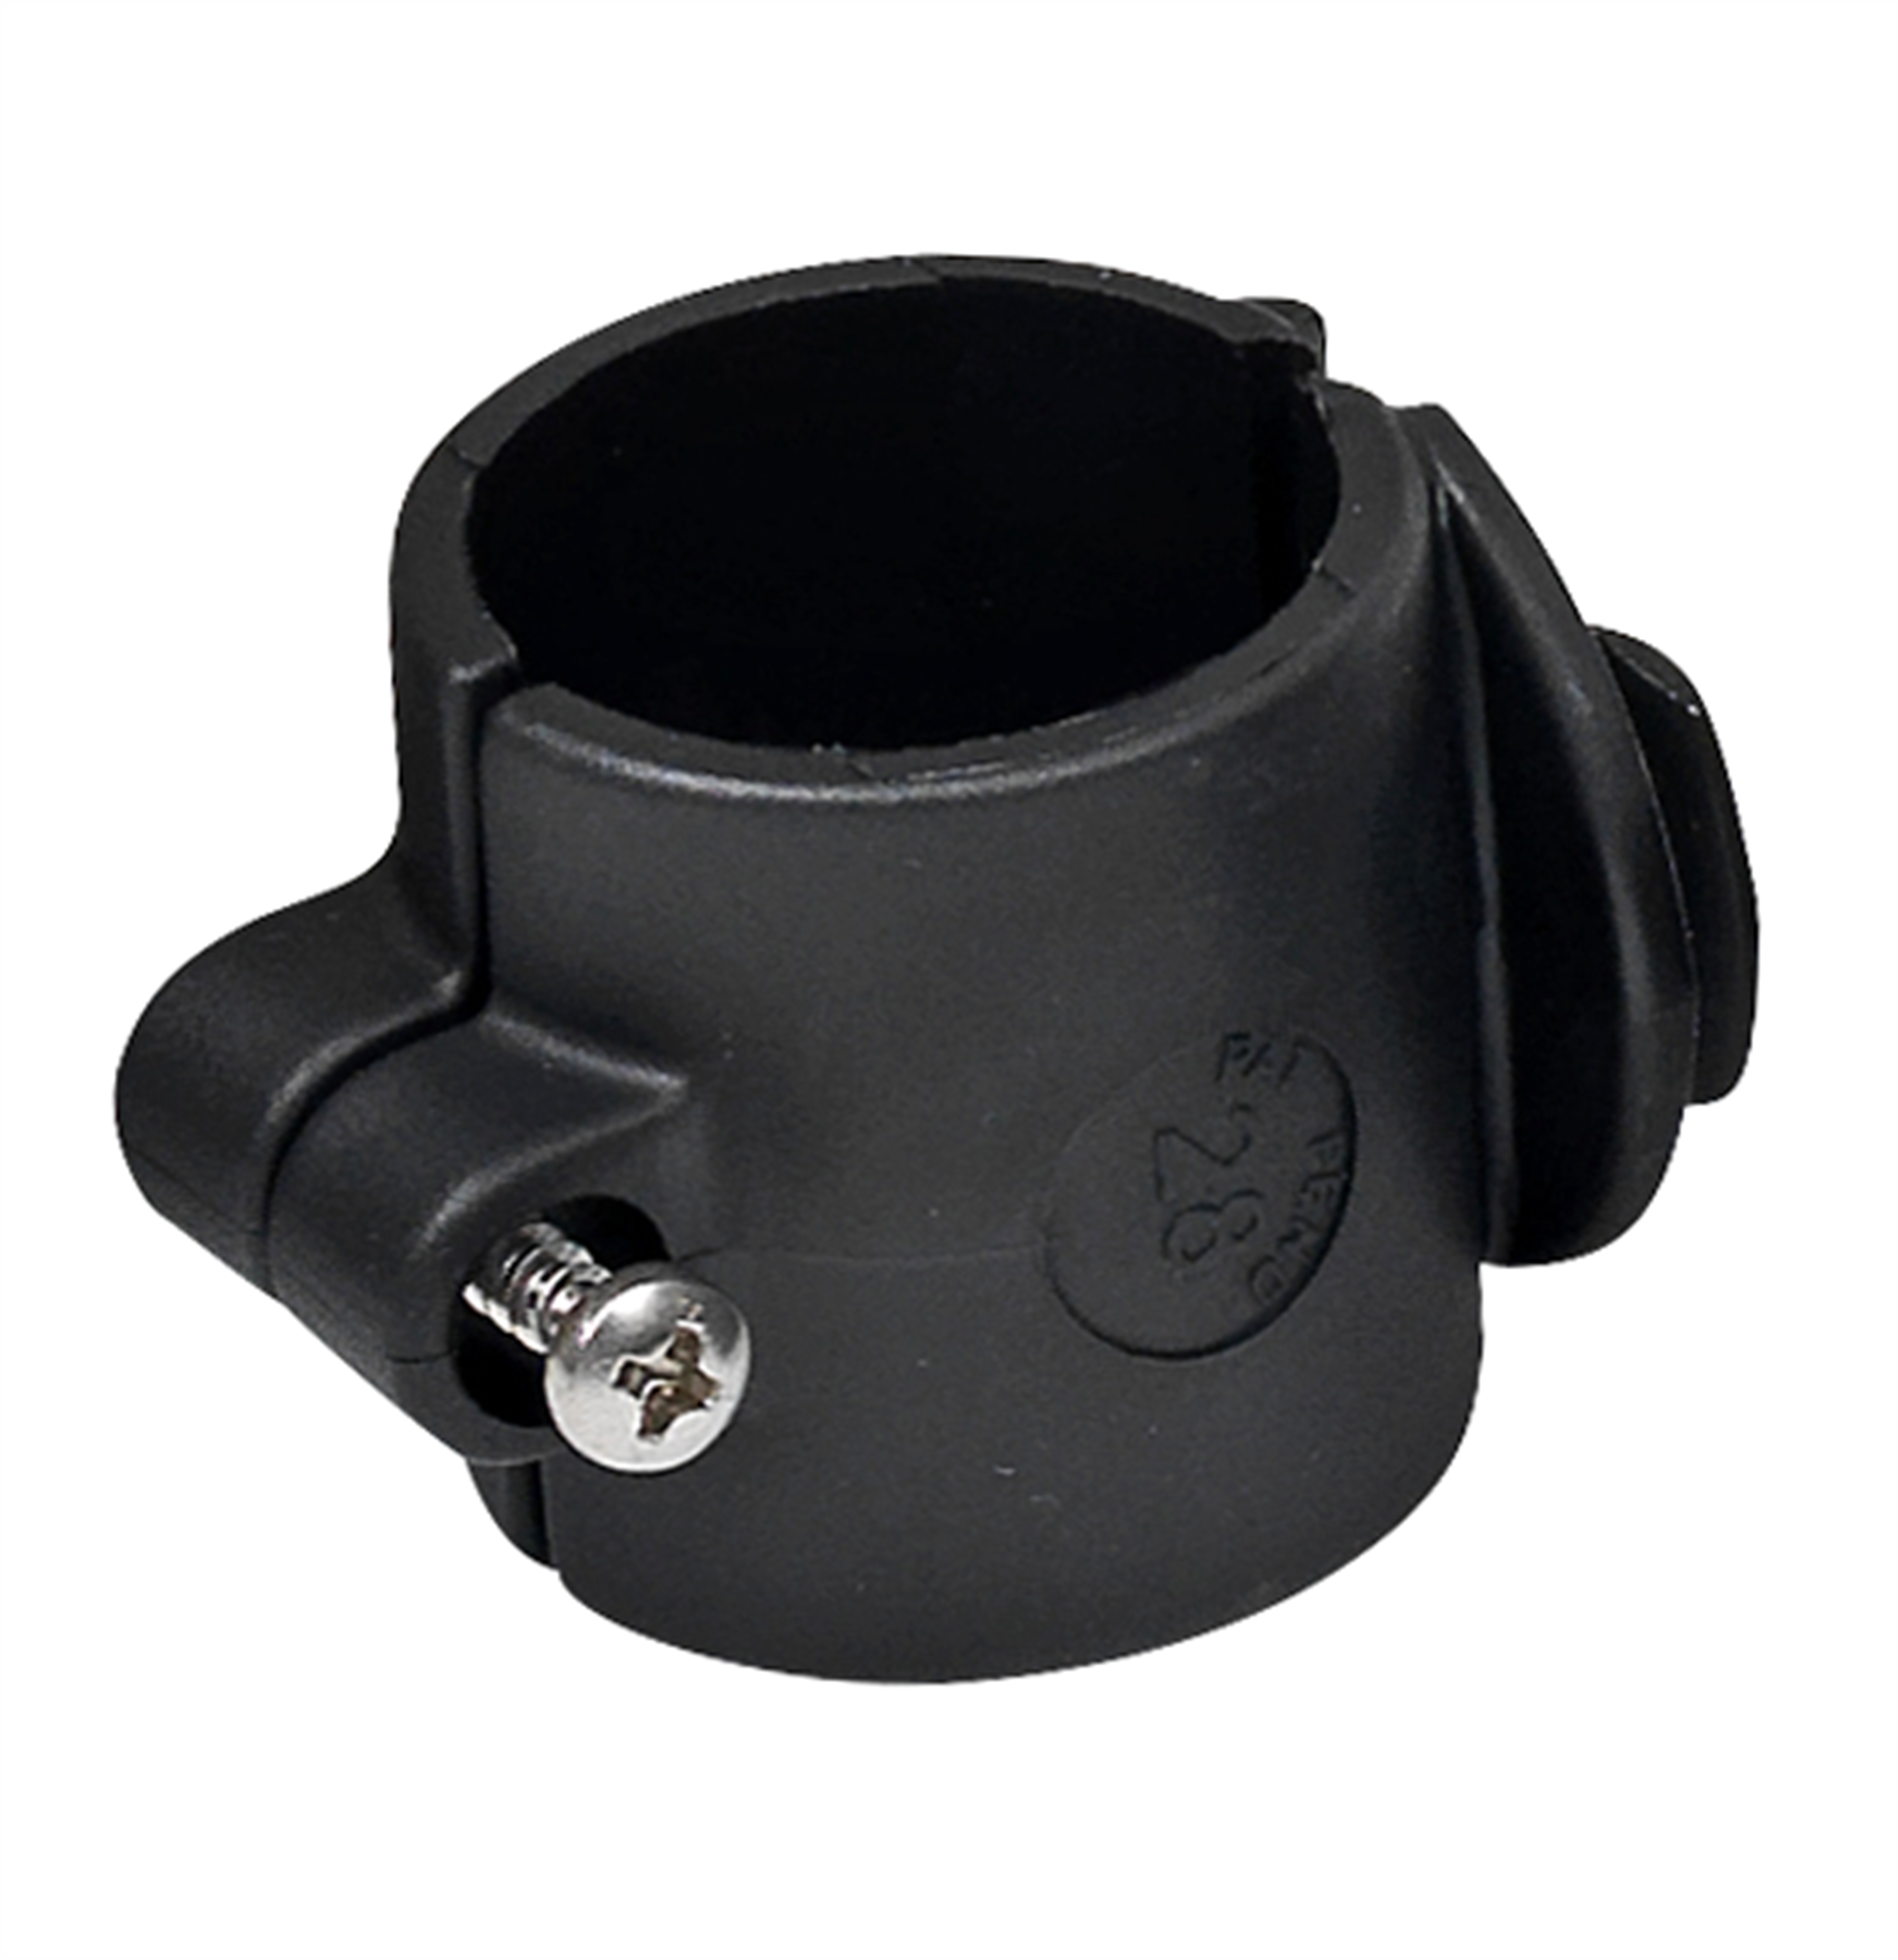 Toolflex Rohrbefestigung Durchmesser 28 mm in schwarz